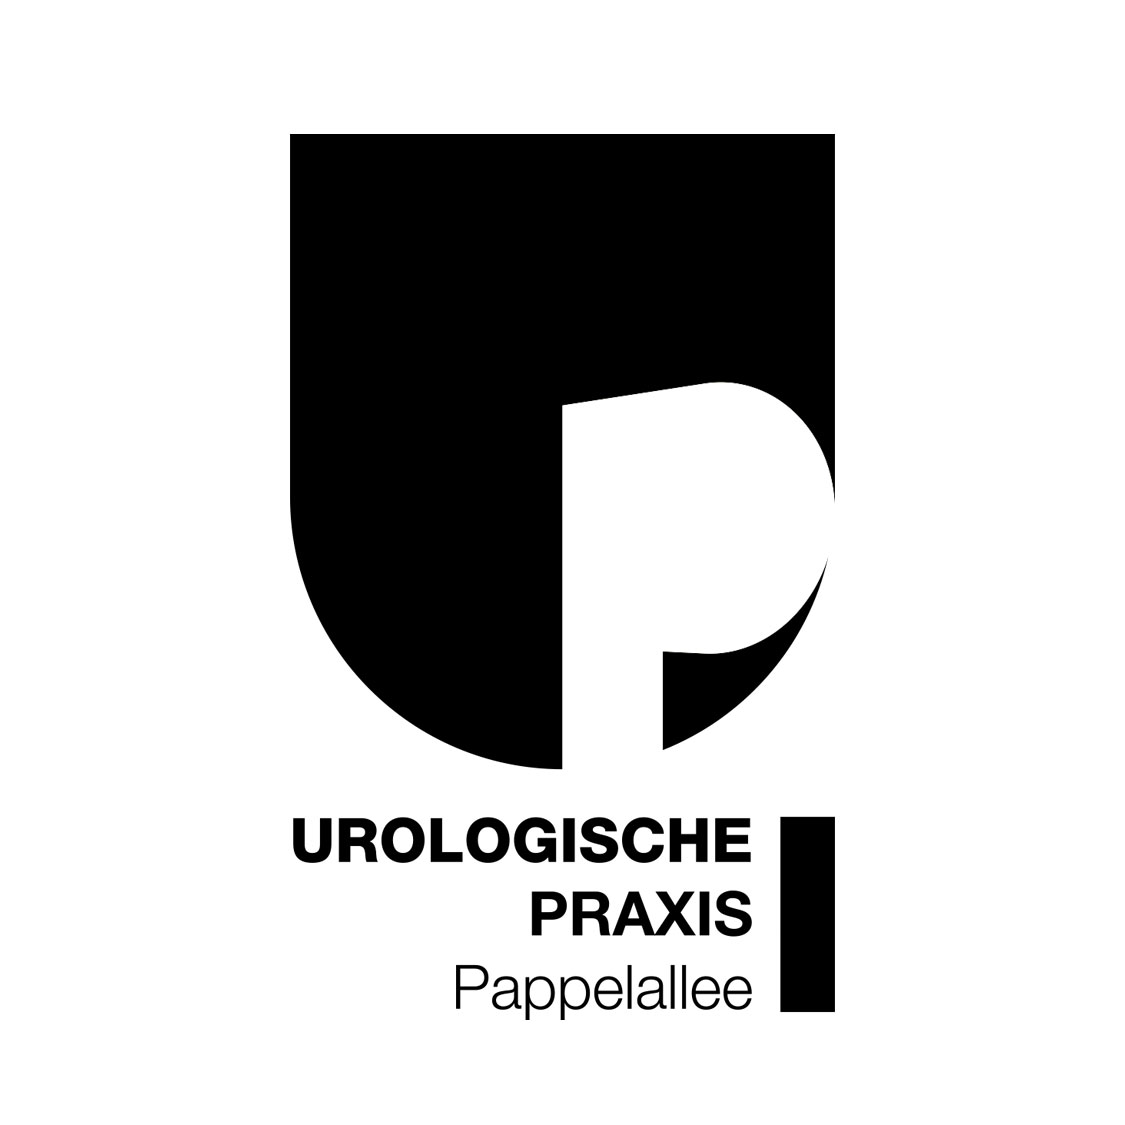 Ansicht des Praxislogos in der Schwarz-Weiß-Variante für die Urologische Praxis Pappelallee ind Greifswald.